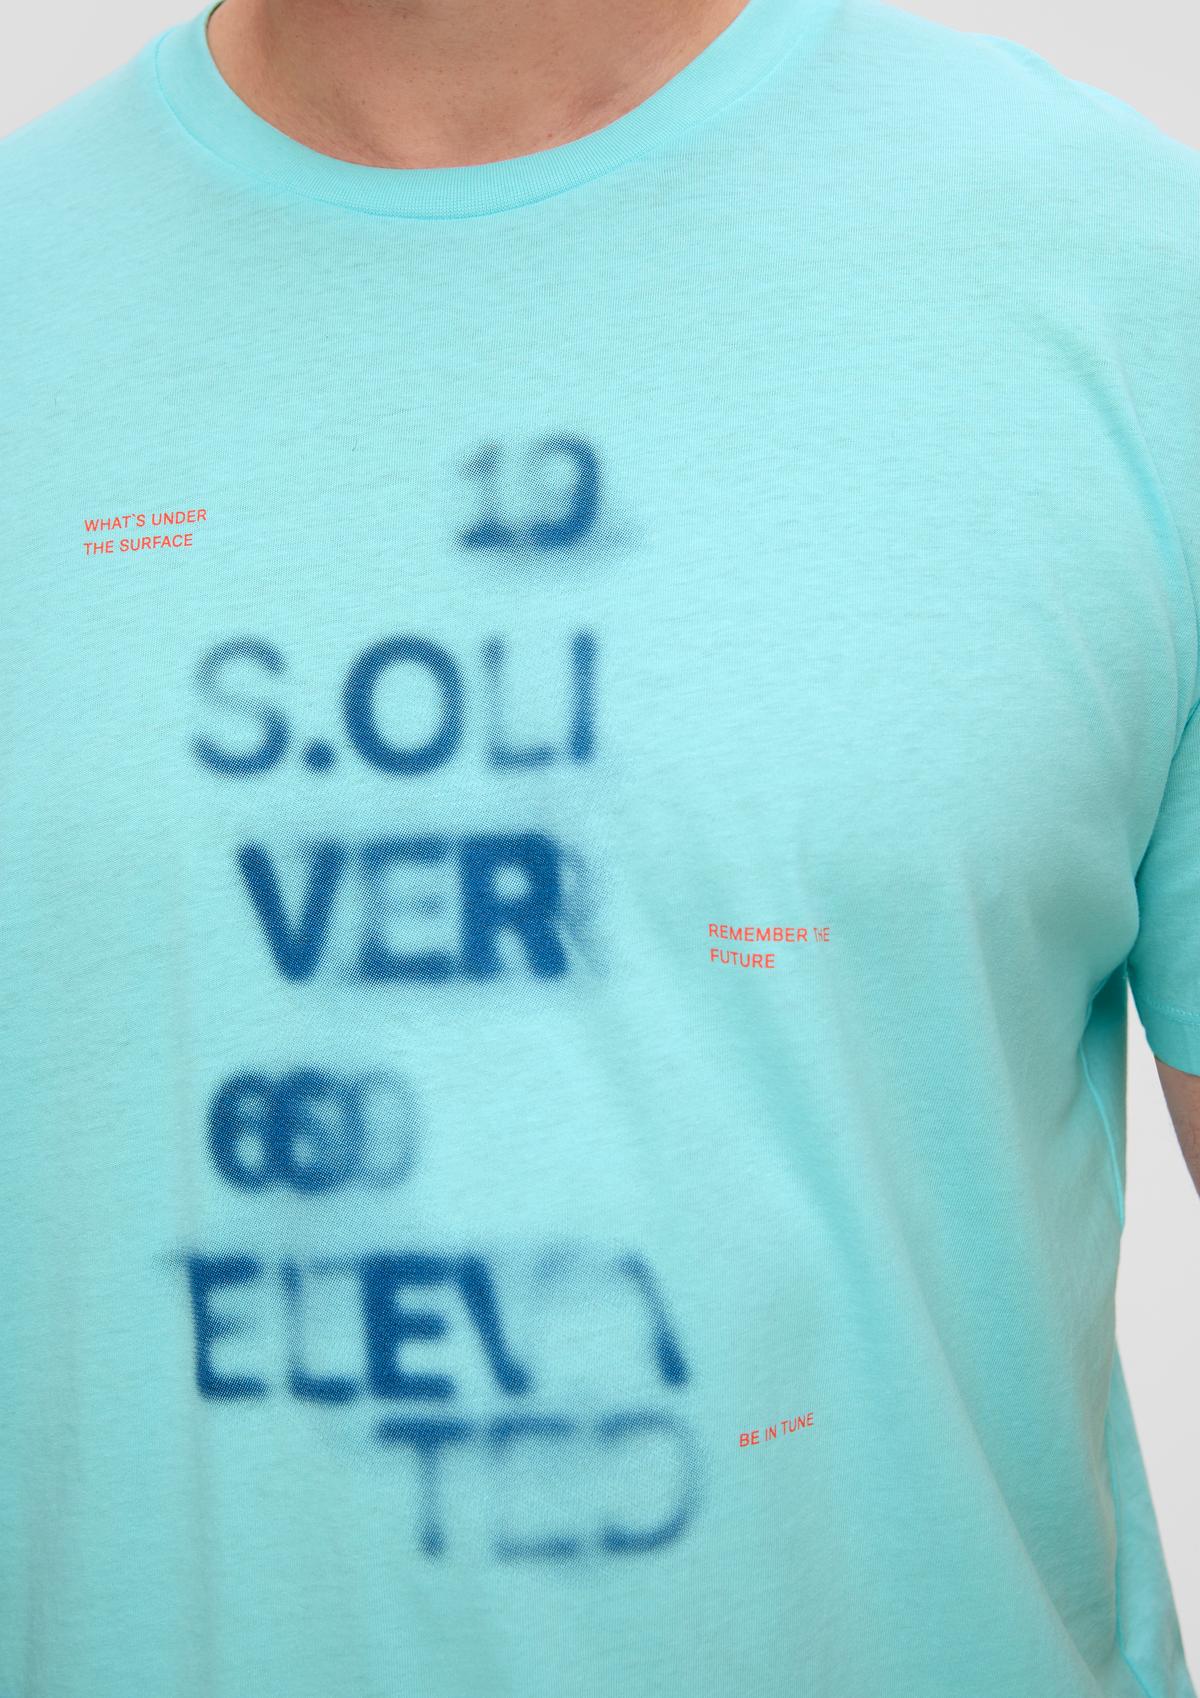 s.Oliver T-shirt imprimé sur le devant